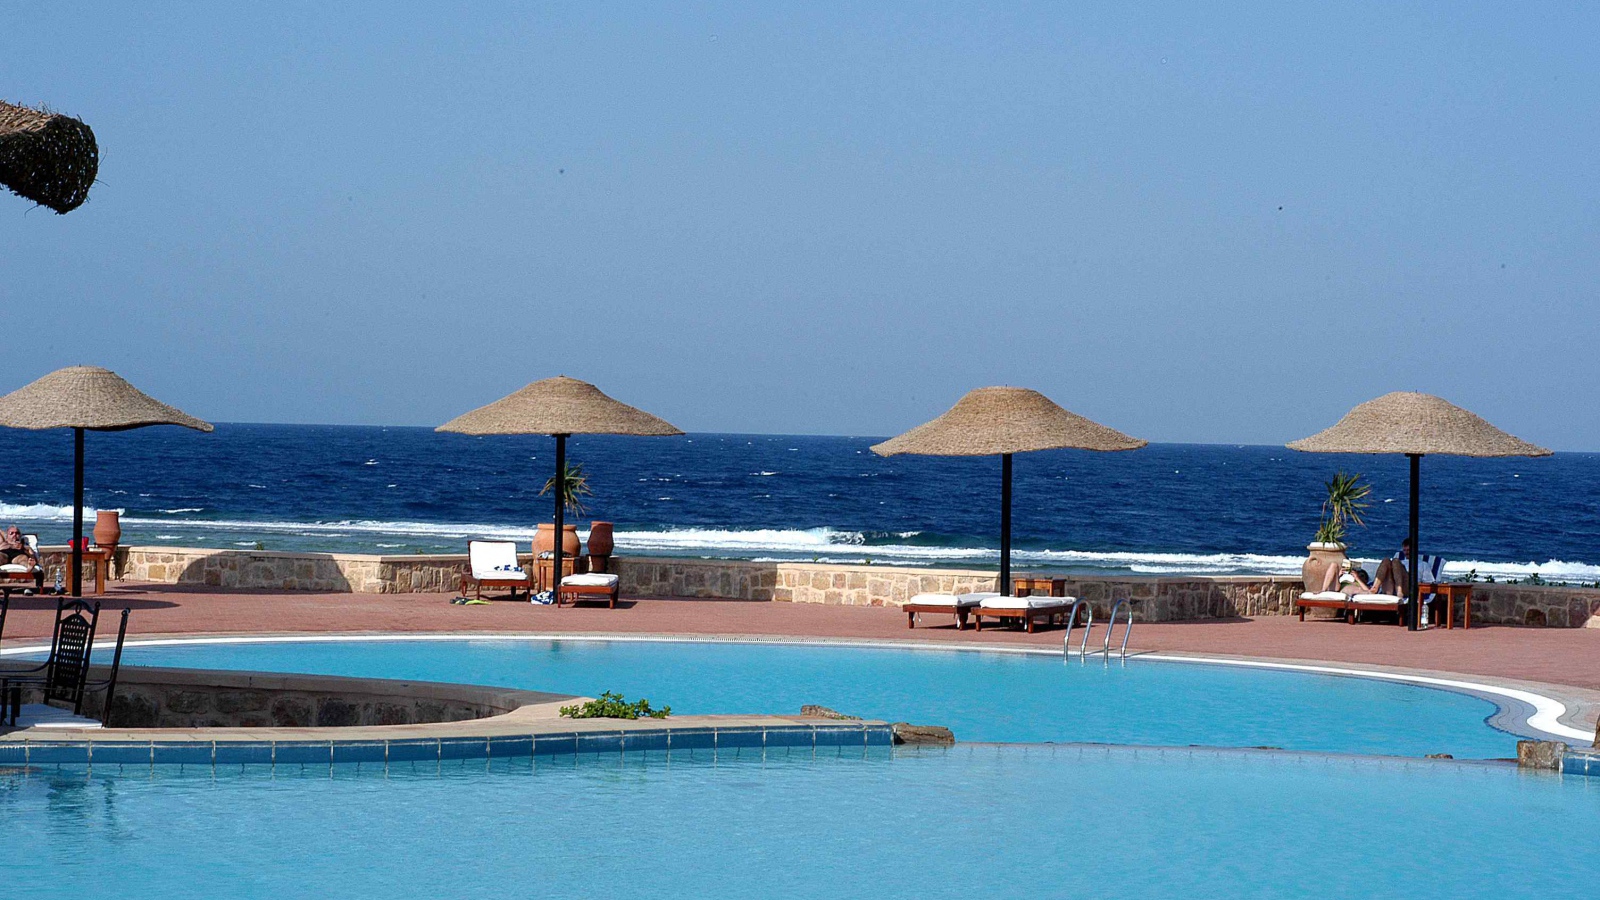 Бассейн в отеле на курорте Эль Кусейр, Египет